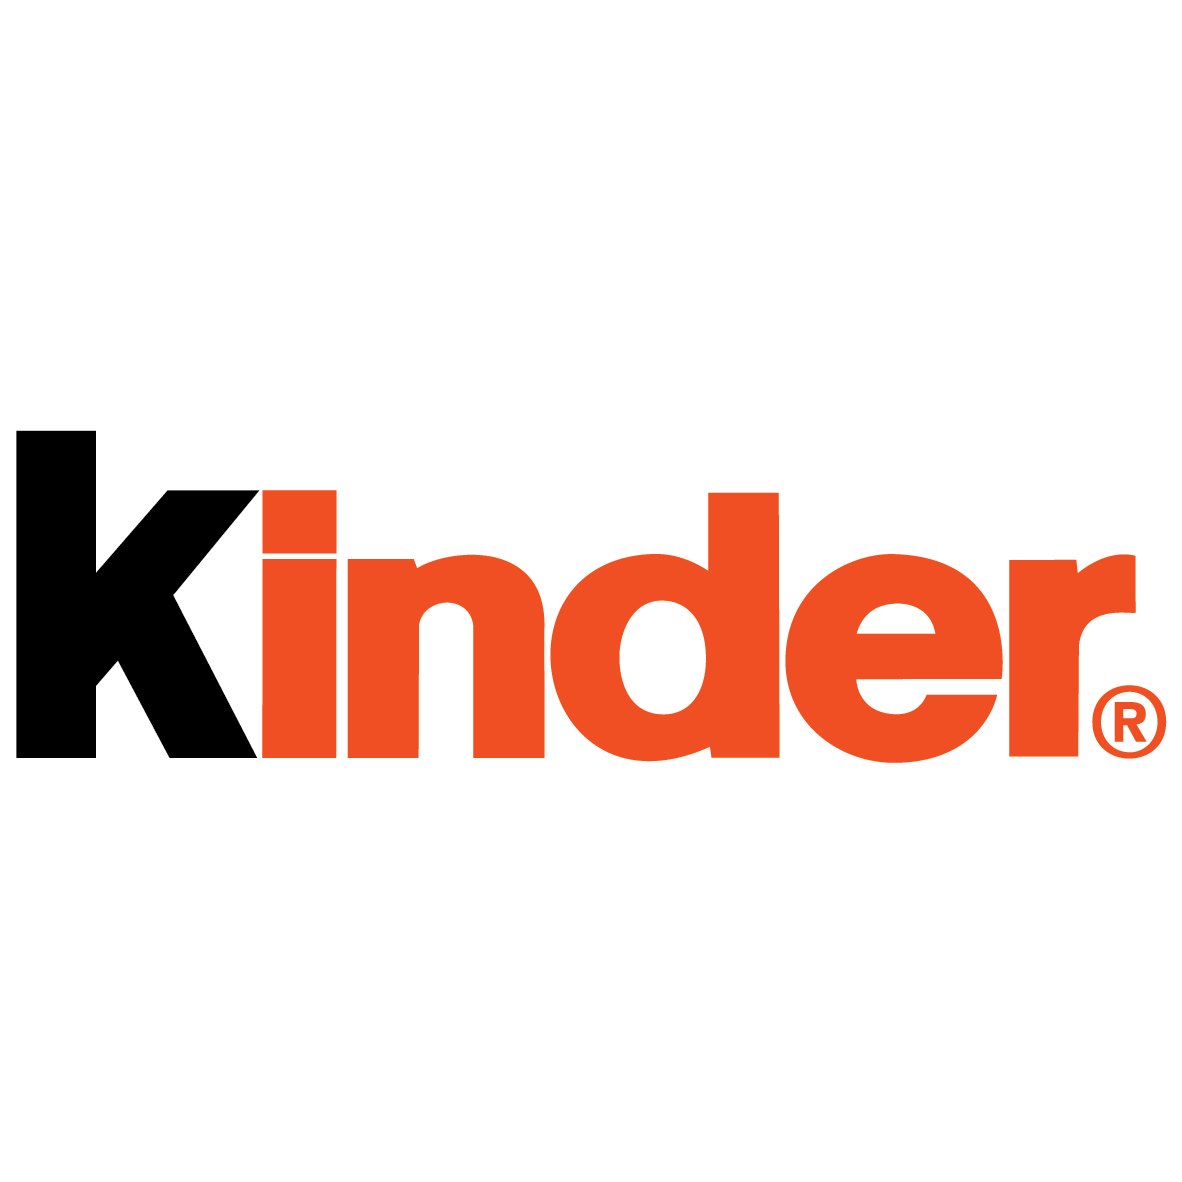 kinder logo-01.png